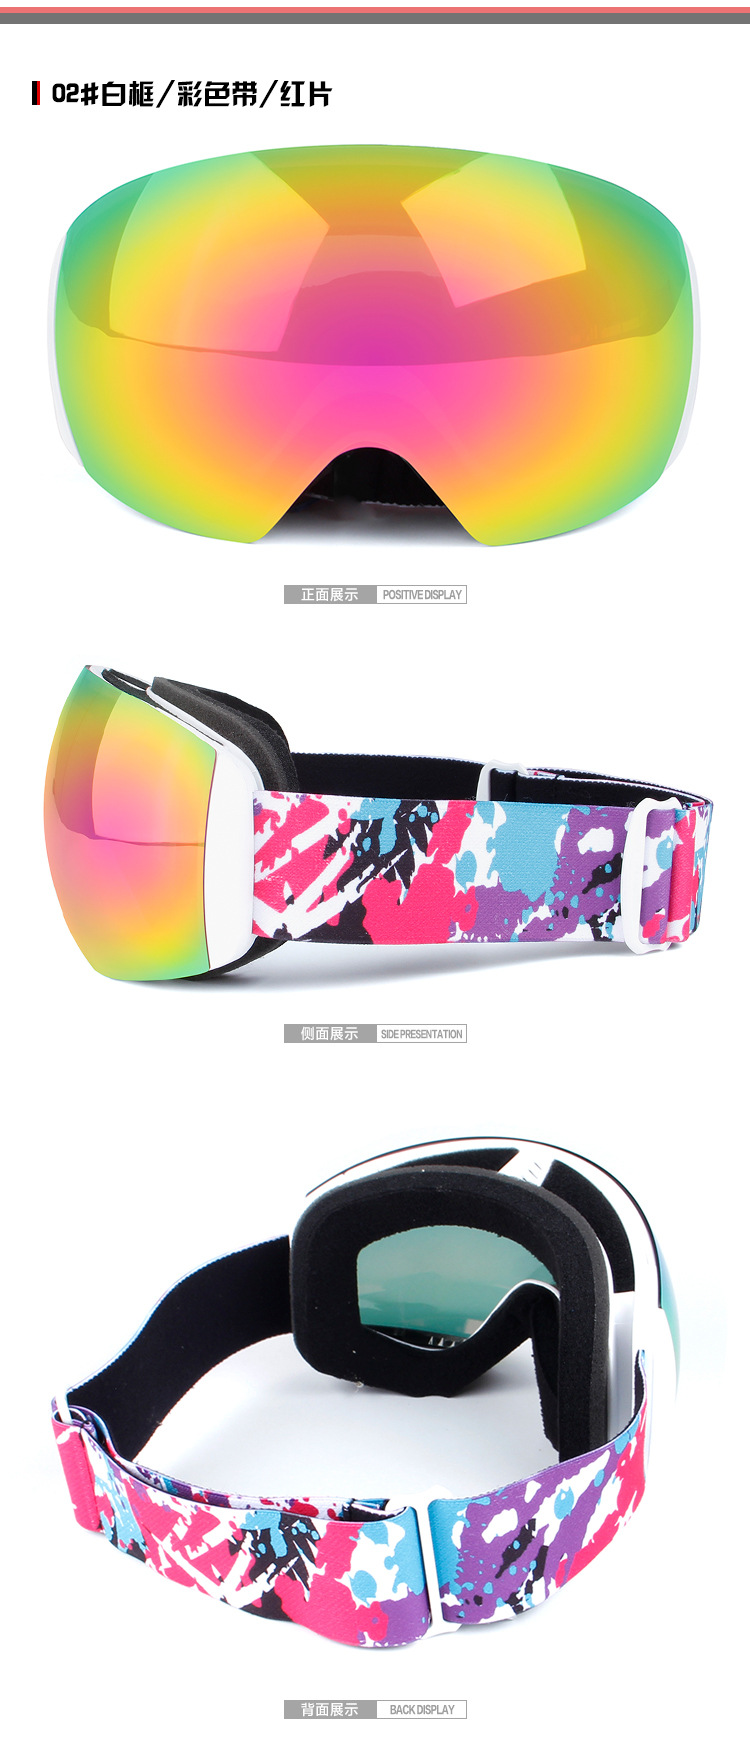 厂家预售 欧宝来H011男女新款全景双层防雾滑雪眼镜摩托镜防风镜示例图8